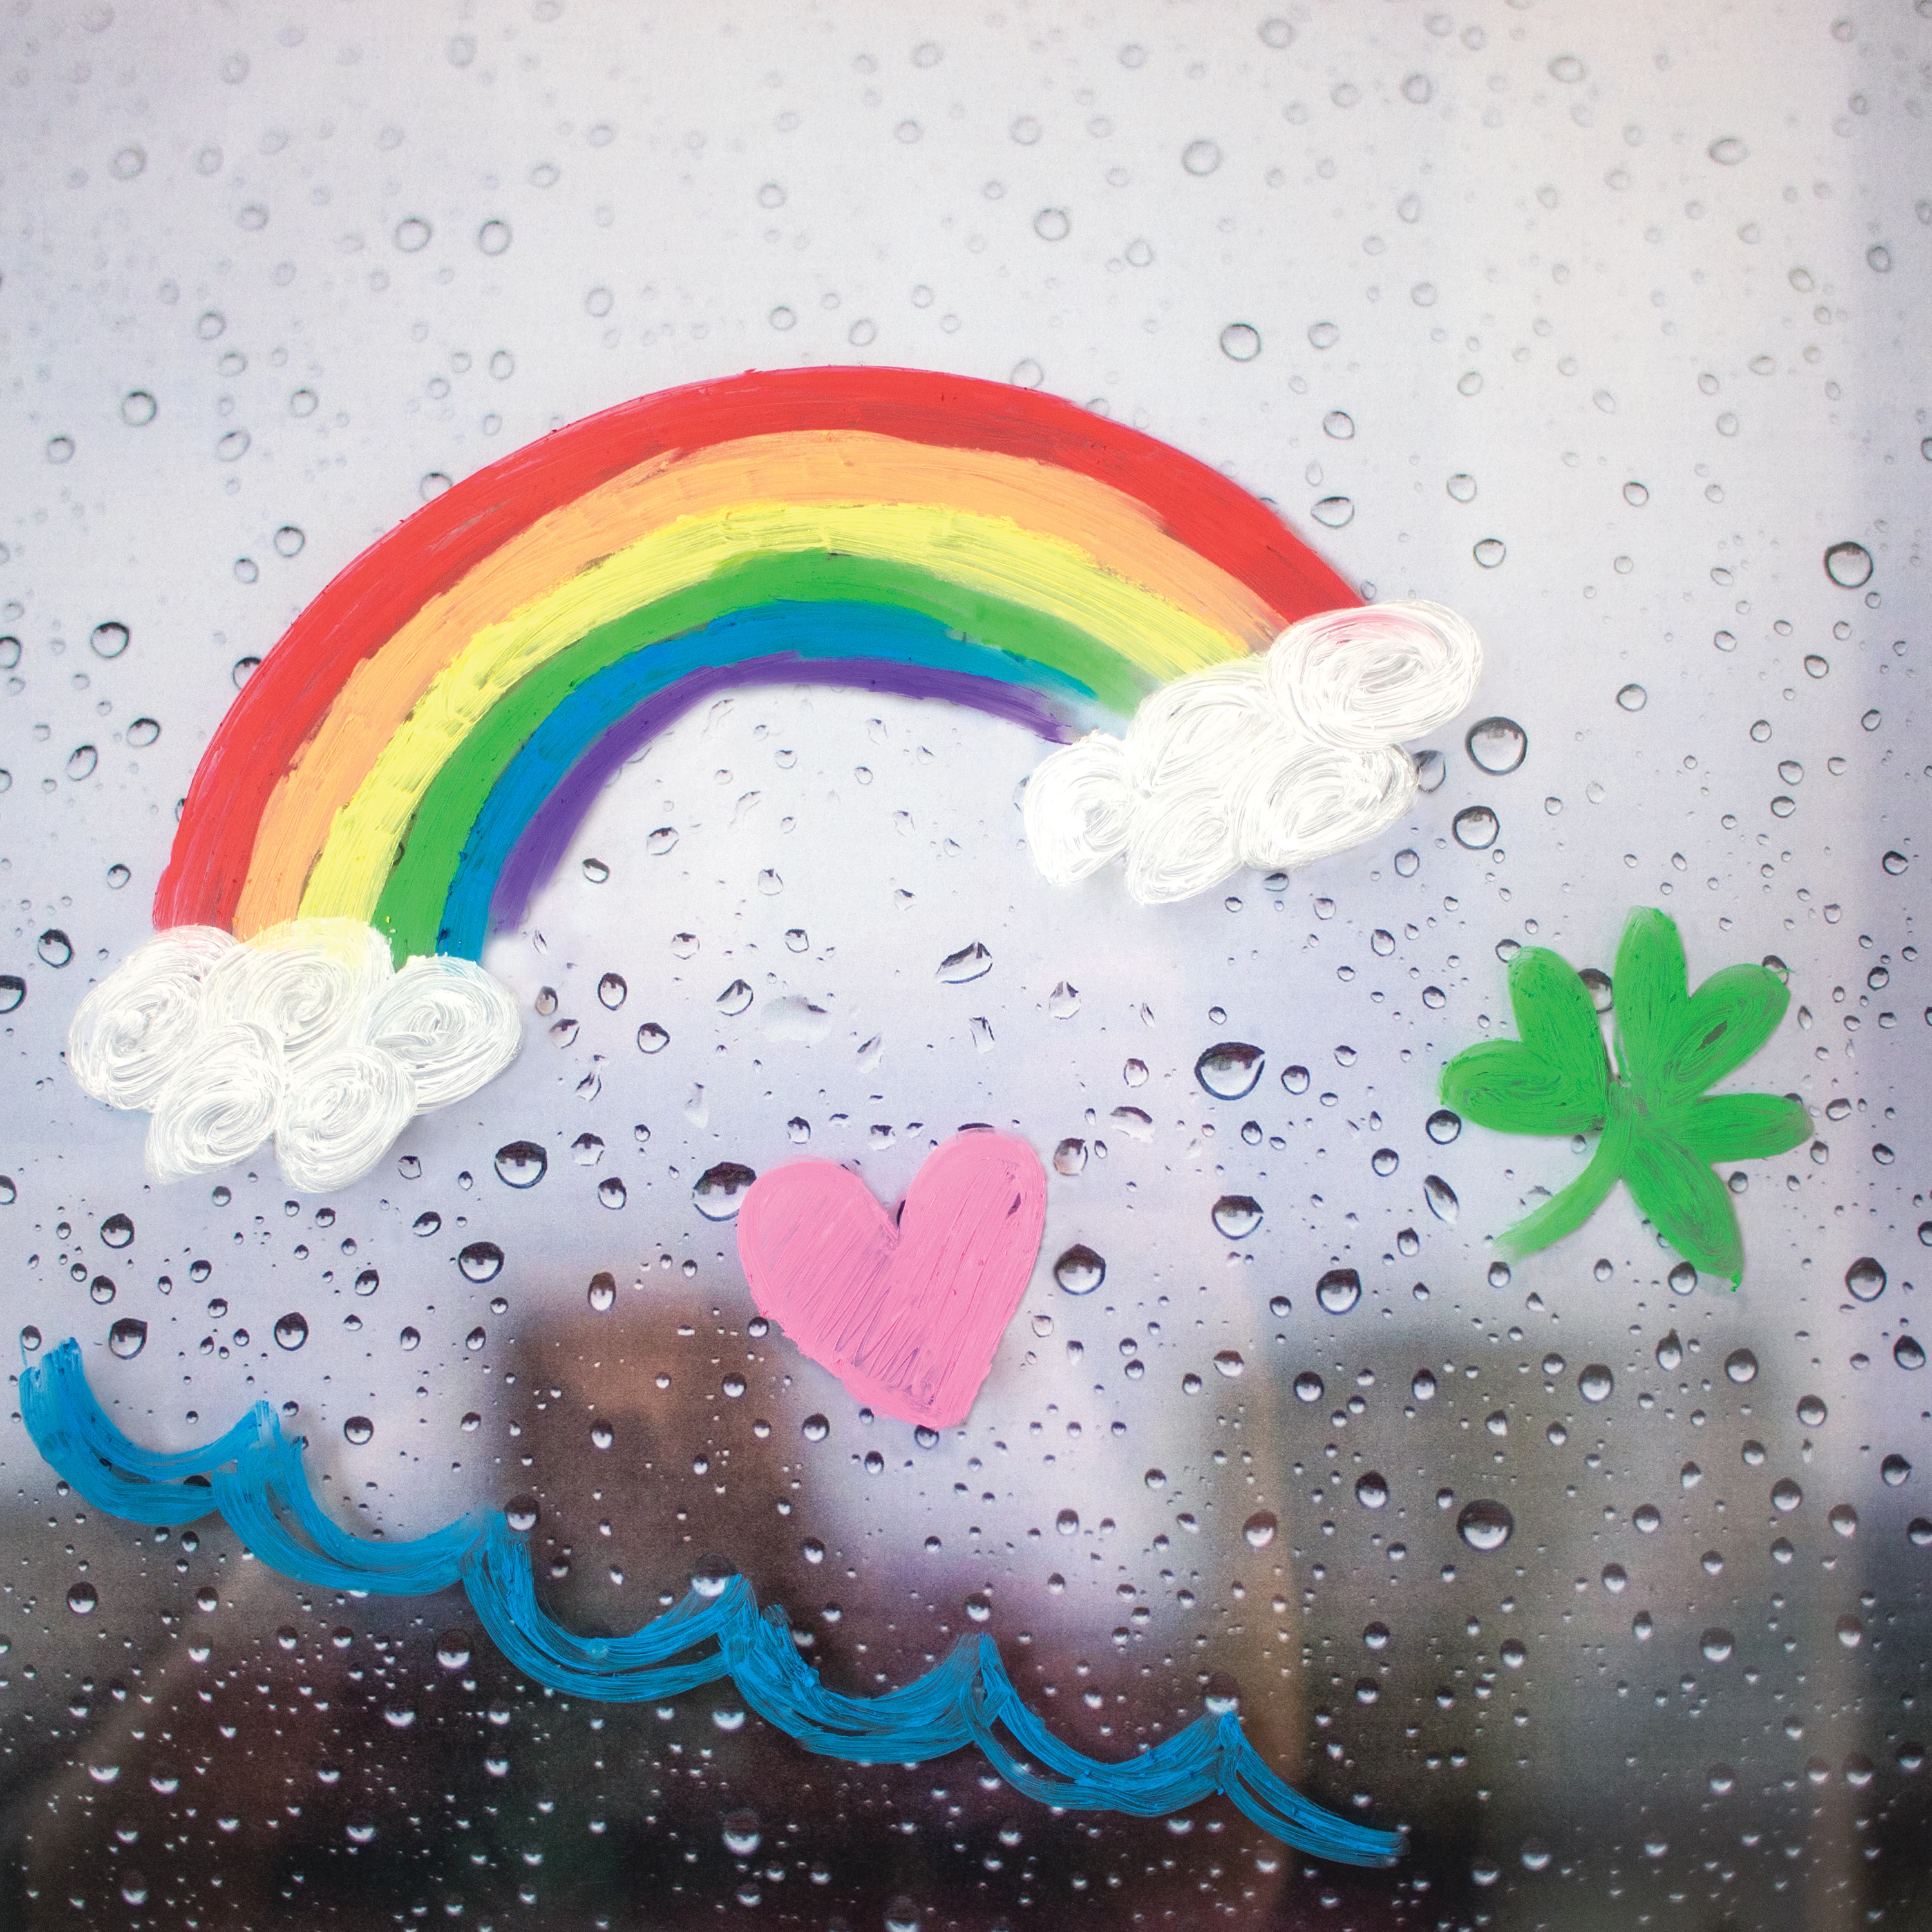 Rainbow art drawn on rainy window with OOLY Rainy Dayz gel crayons